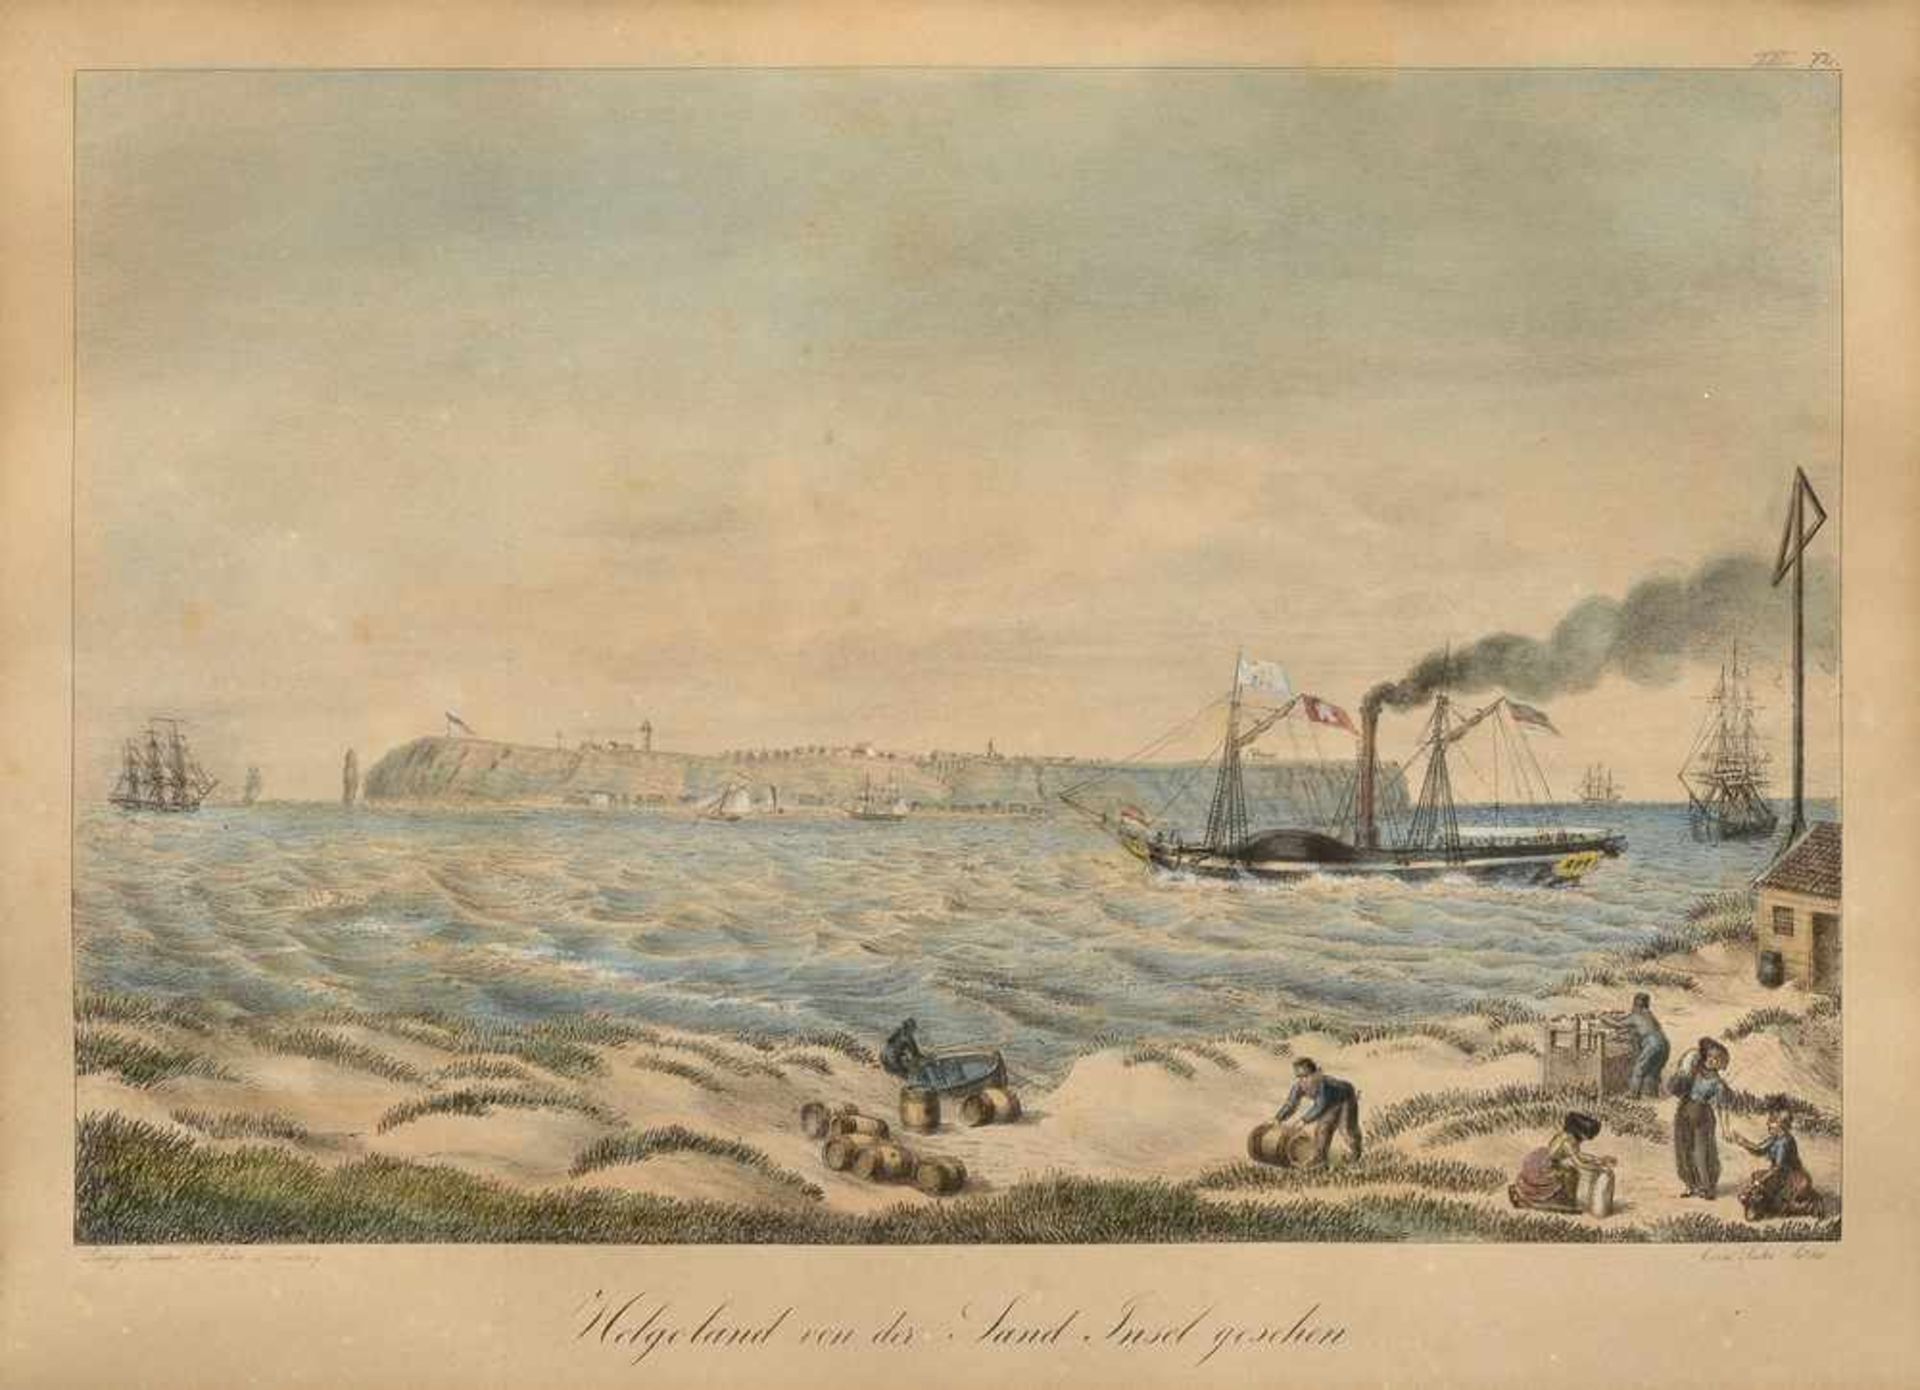 Suhr, Peter (1788-1857) "Helgoland von der Sand Insel gesehen", um 1827/30, colorierte Lithographie,